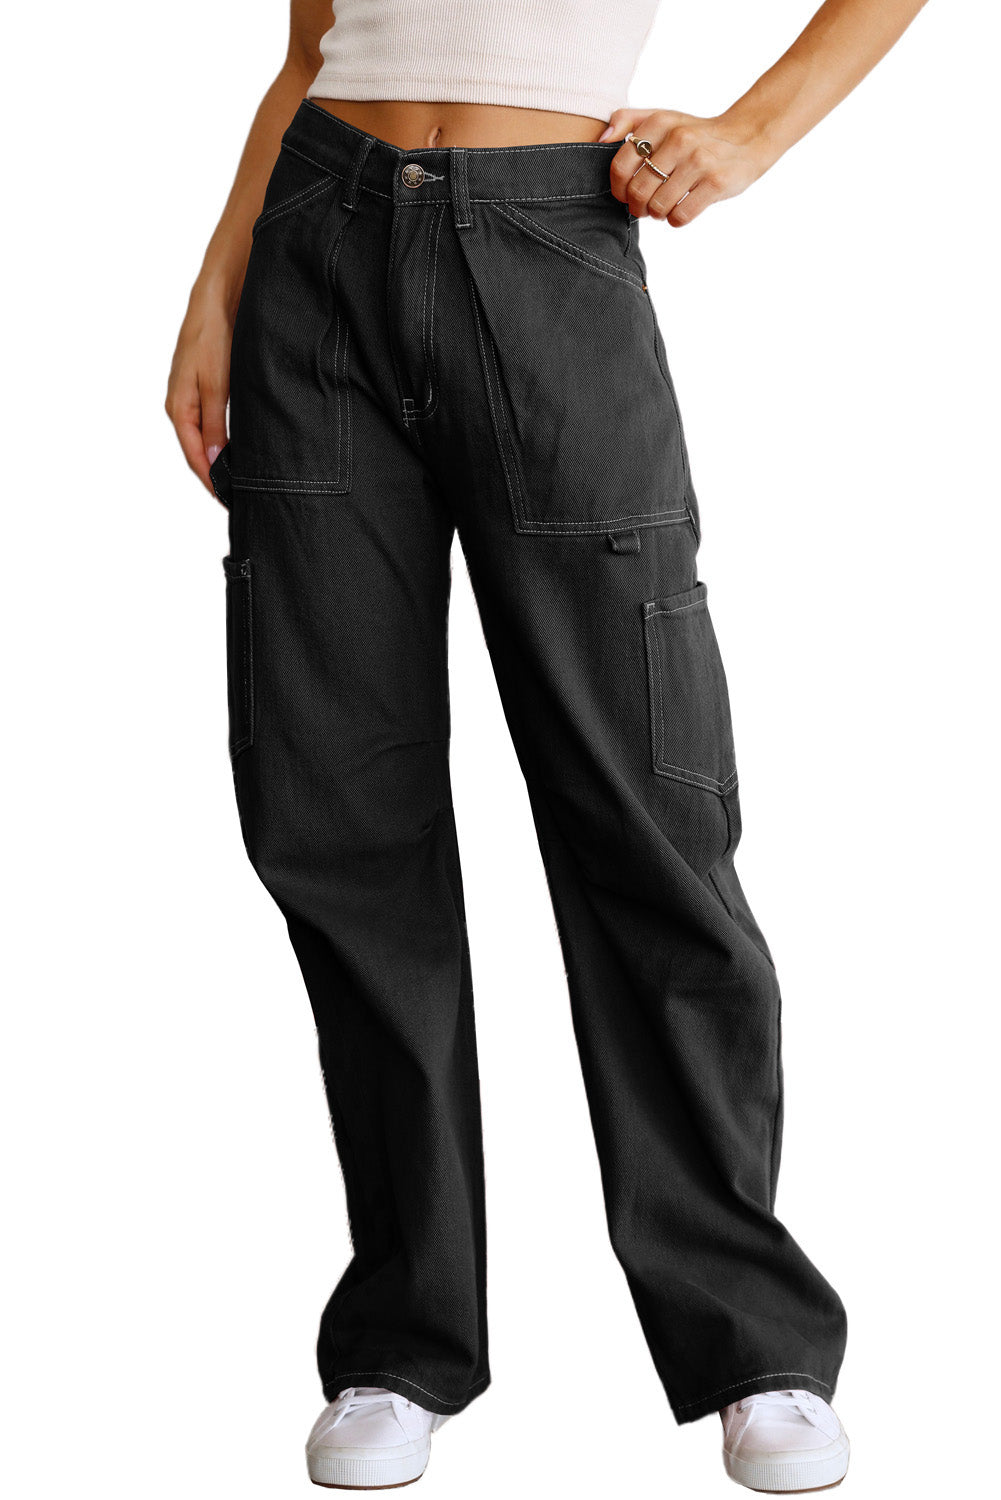 Crne ravne kargo hlače visokog struka s džepovima